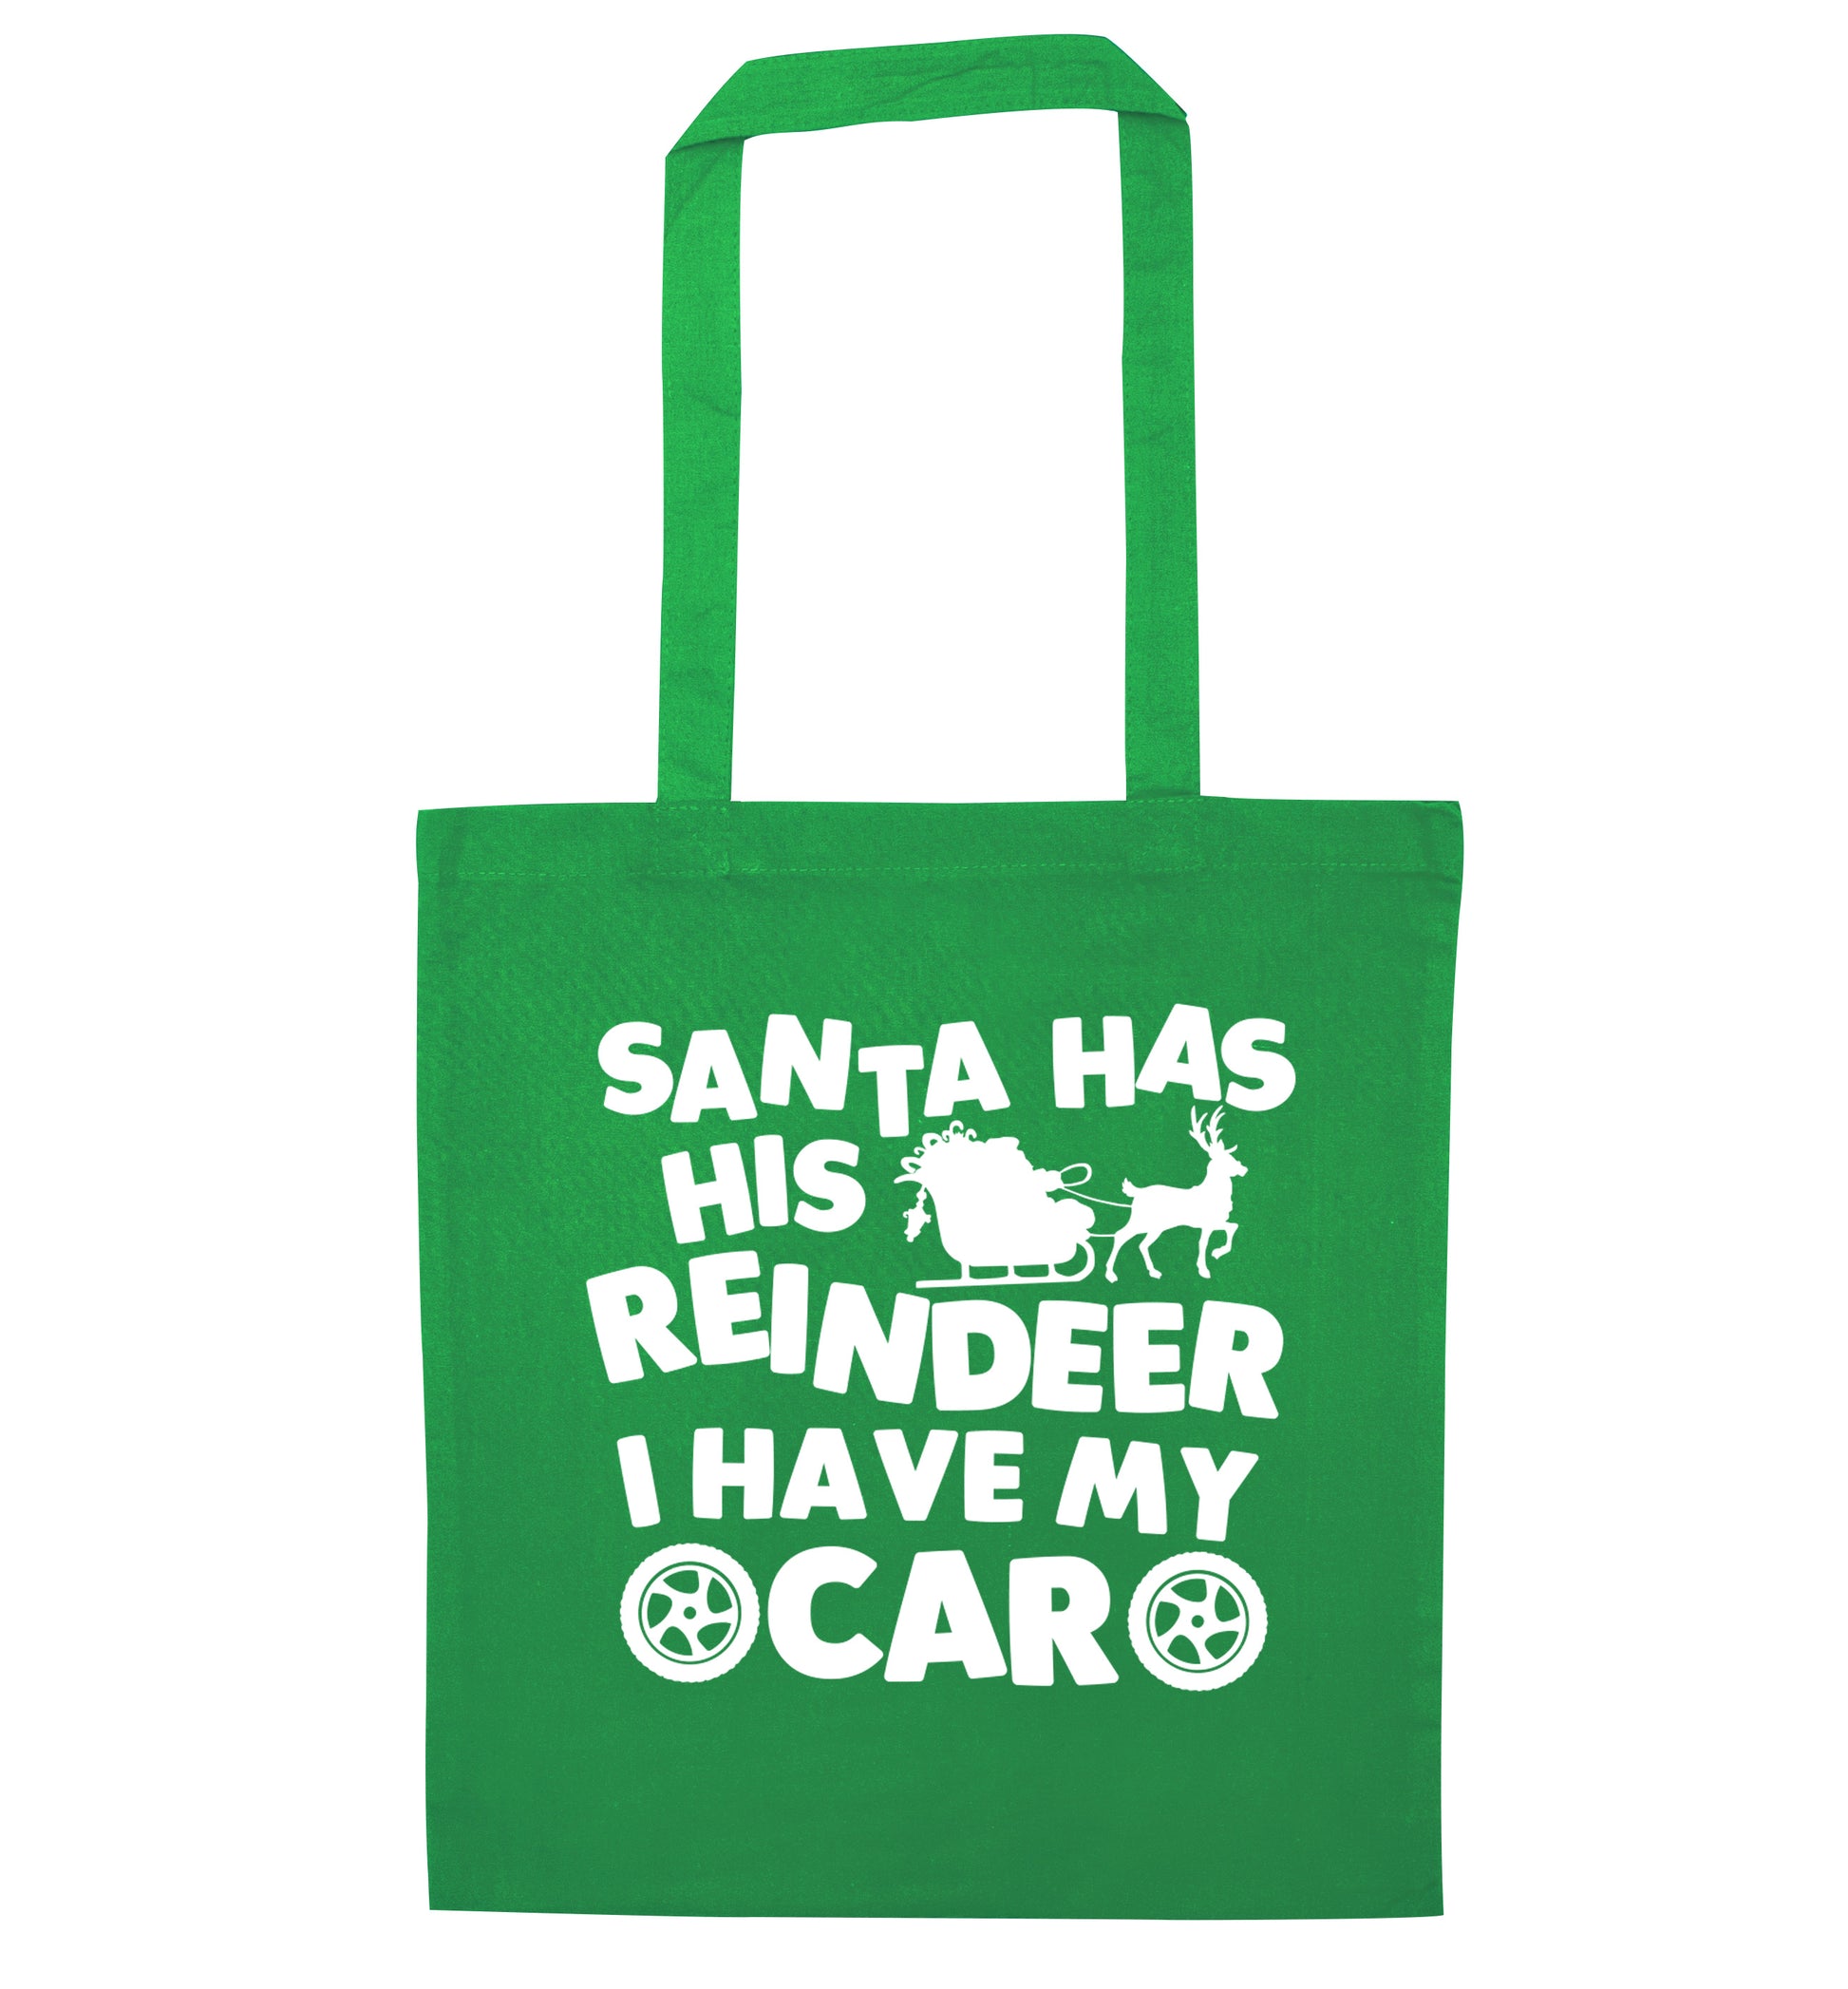 Santa has his reindeer I have my car green tote bag